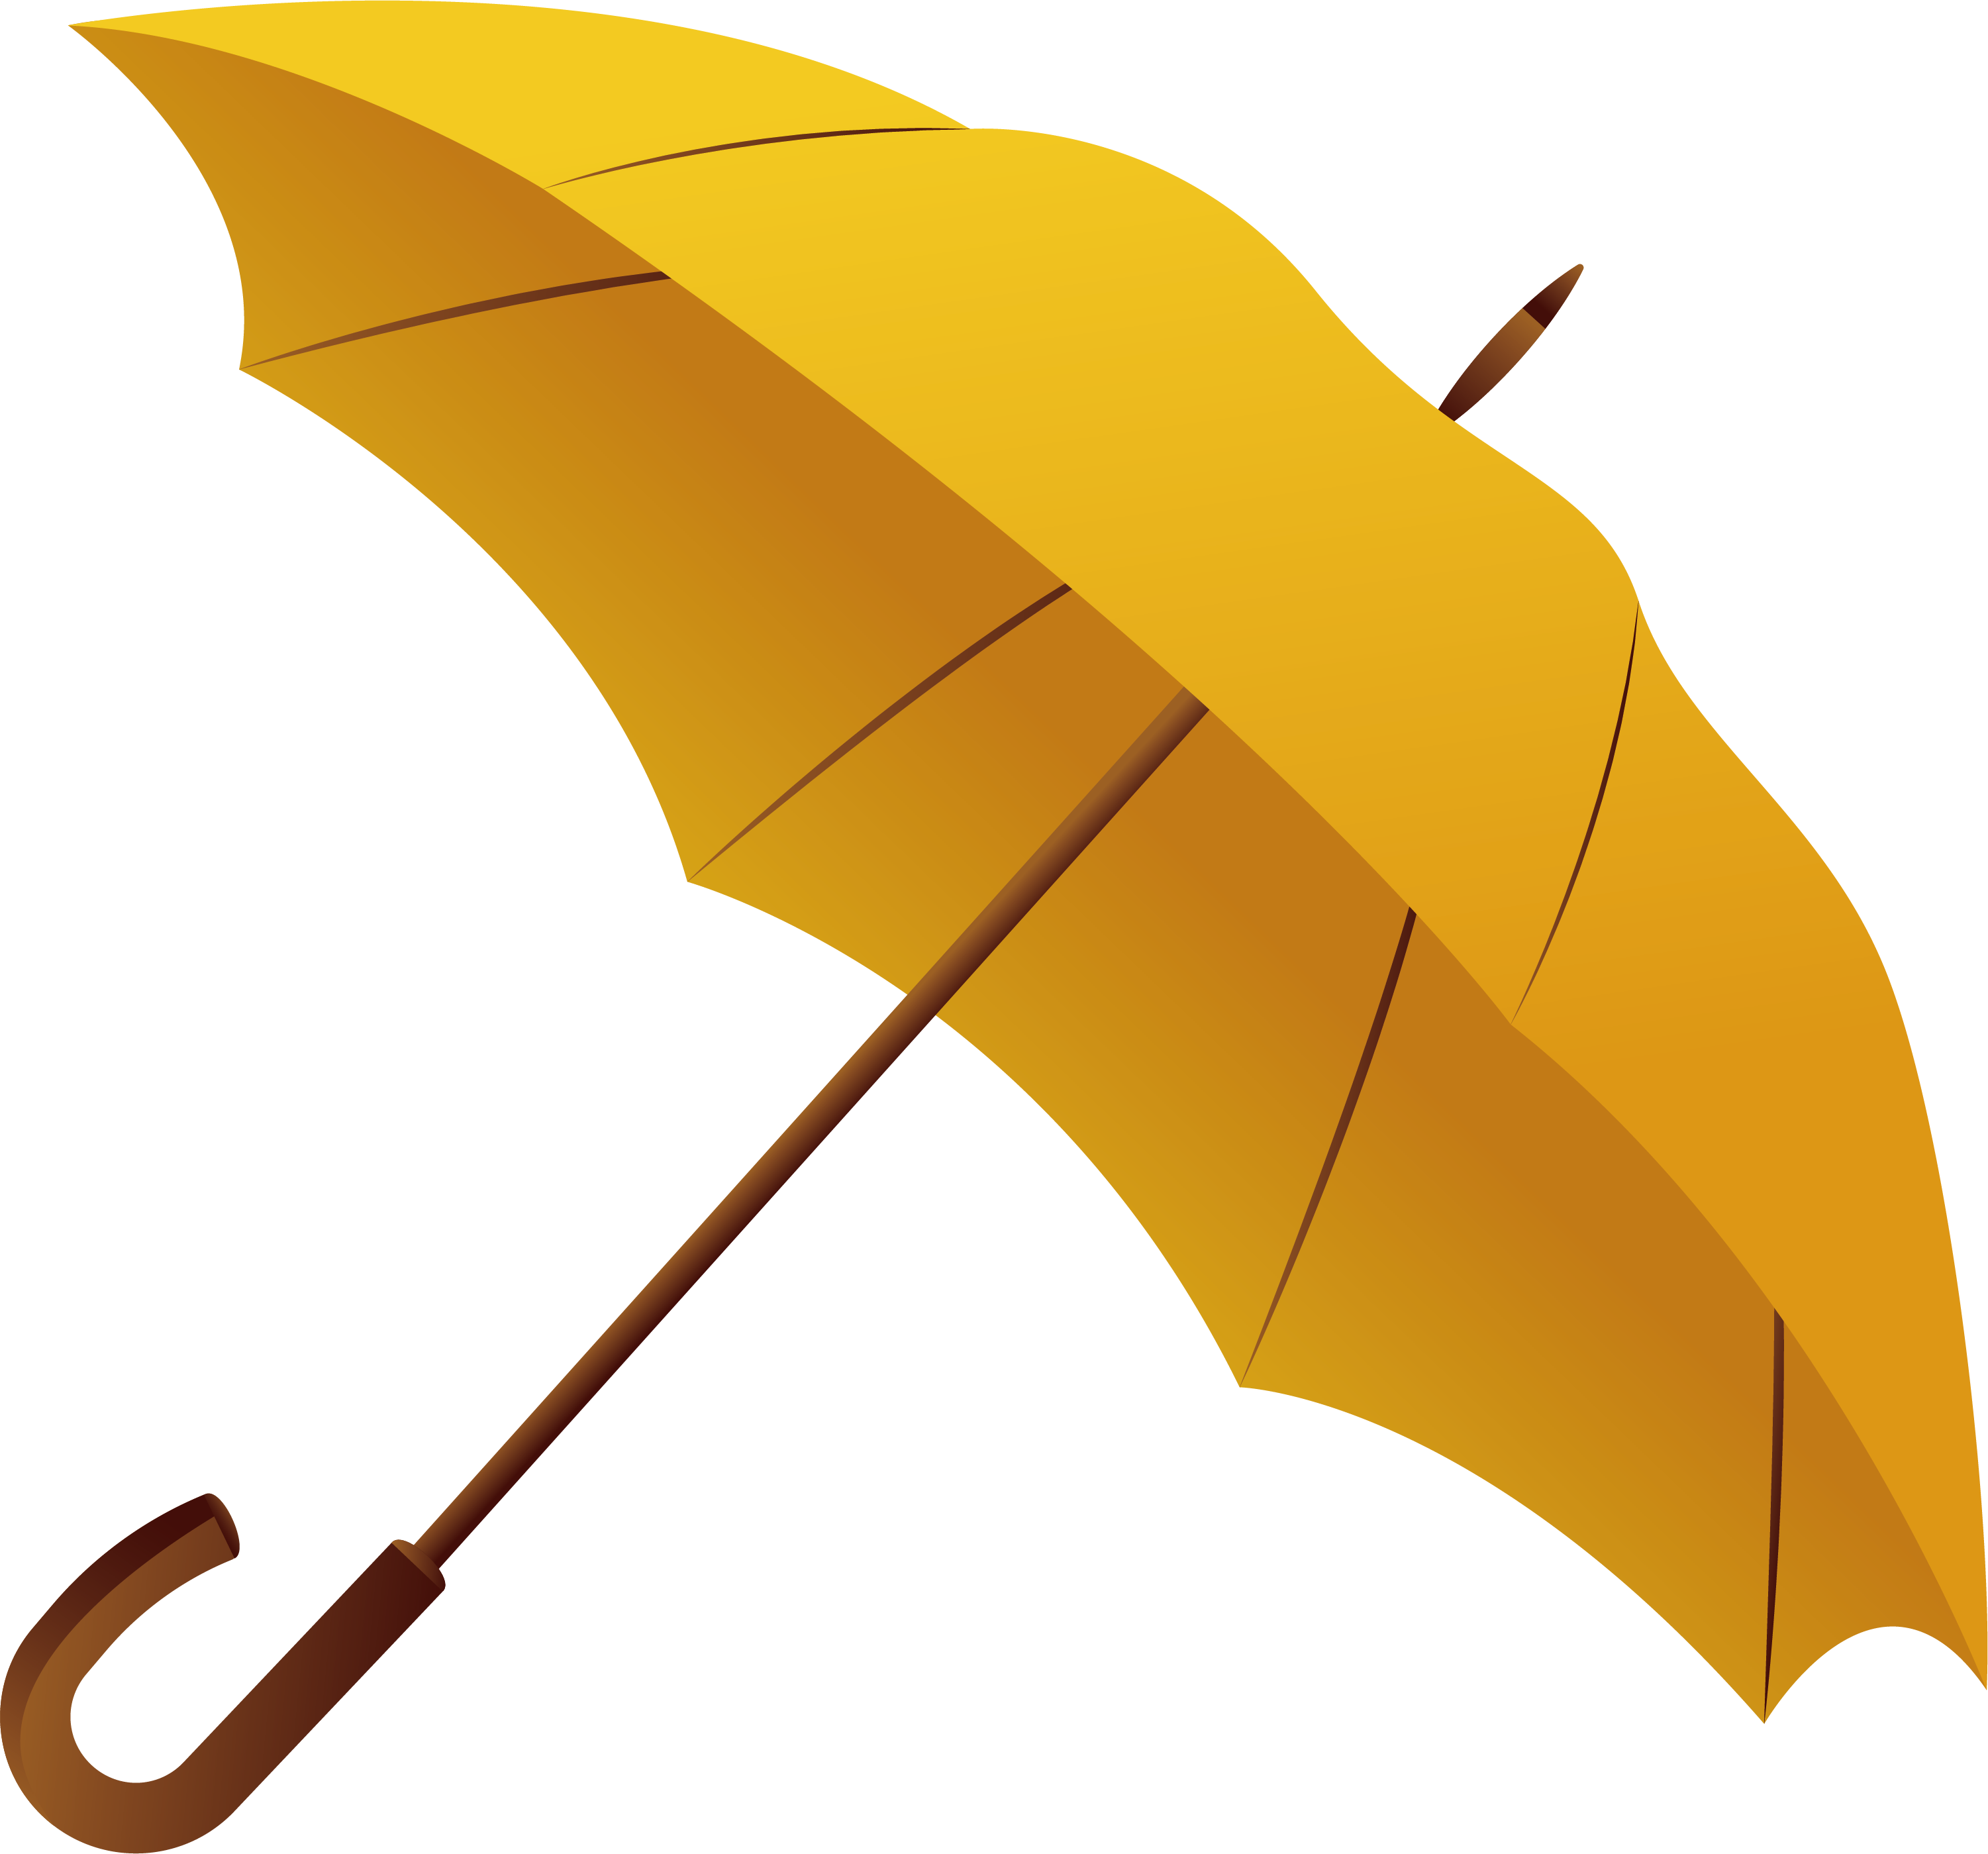 Umbrella gadget color.